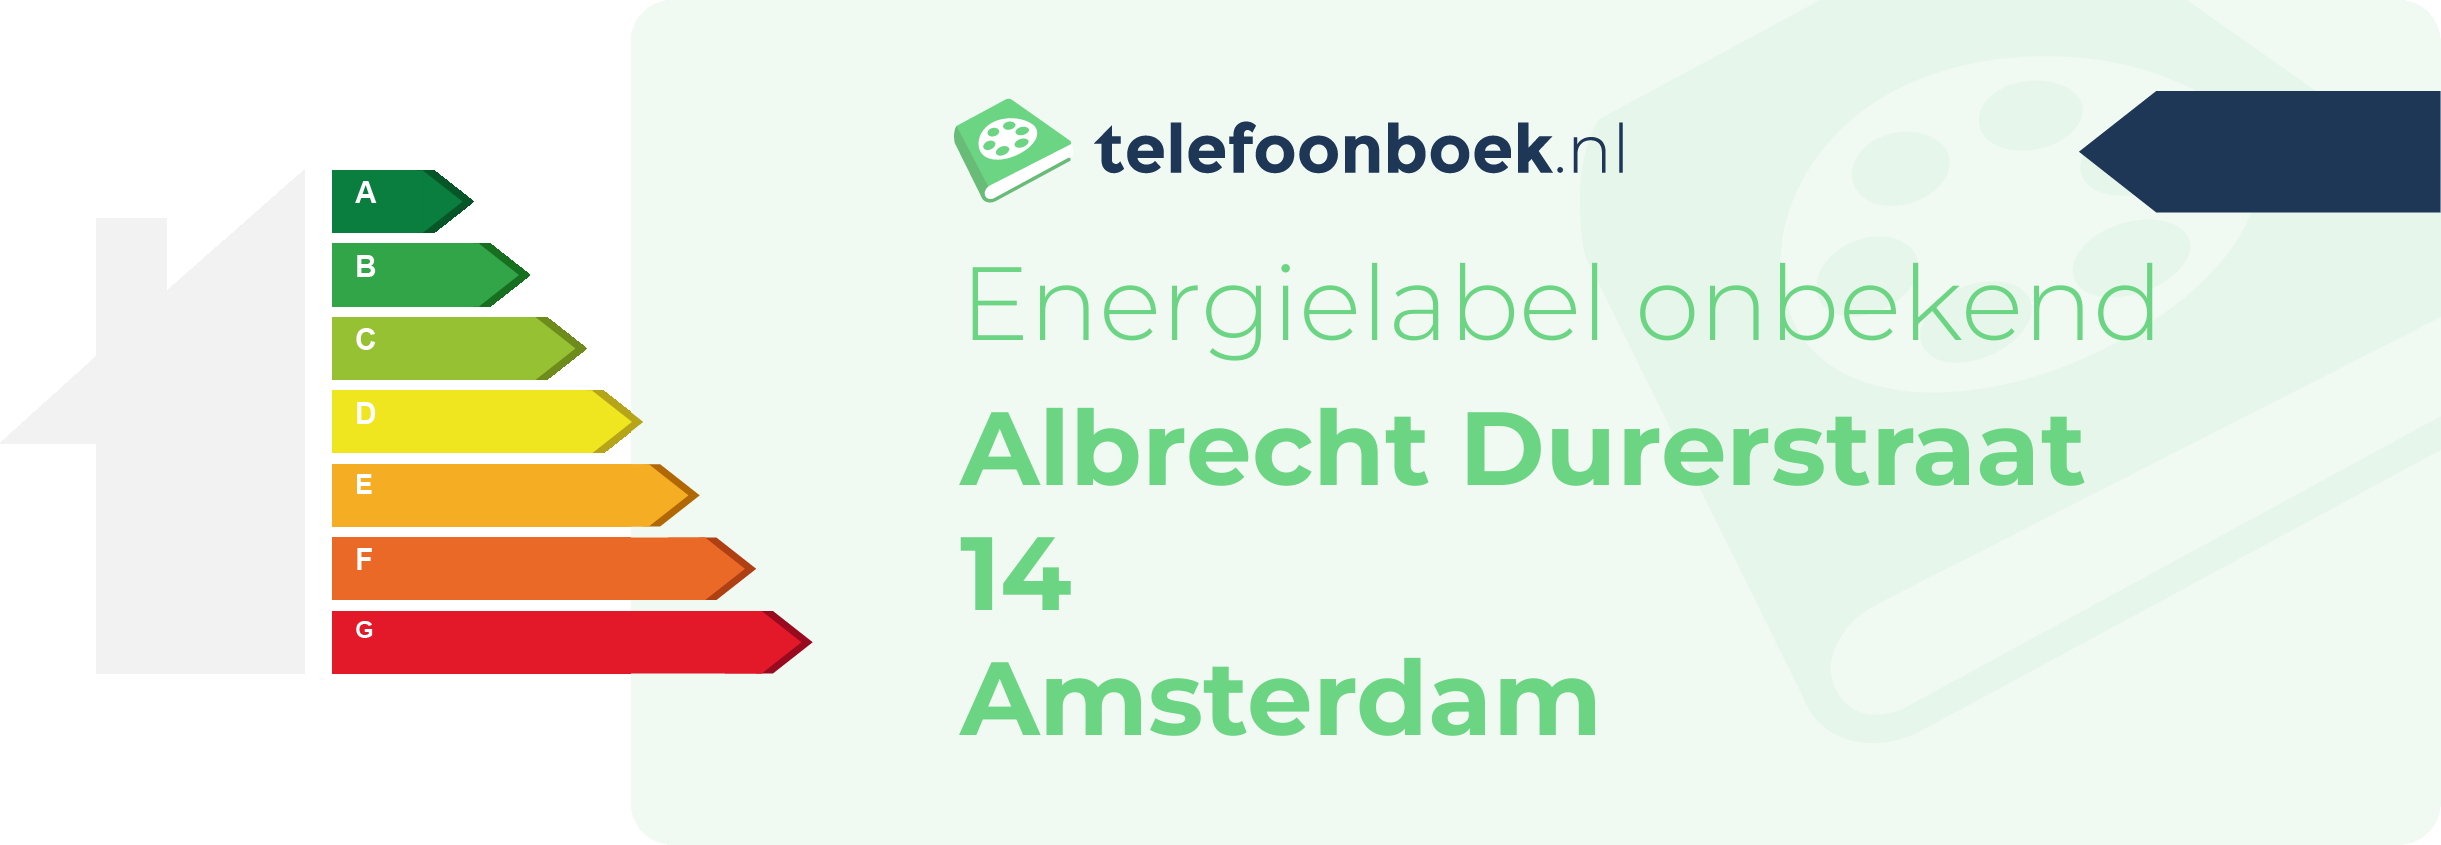 Energielabel Albrecht Durerstraat 14 Amsterdam